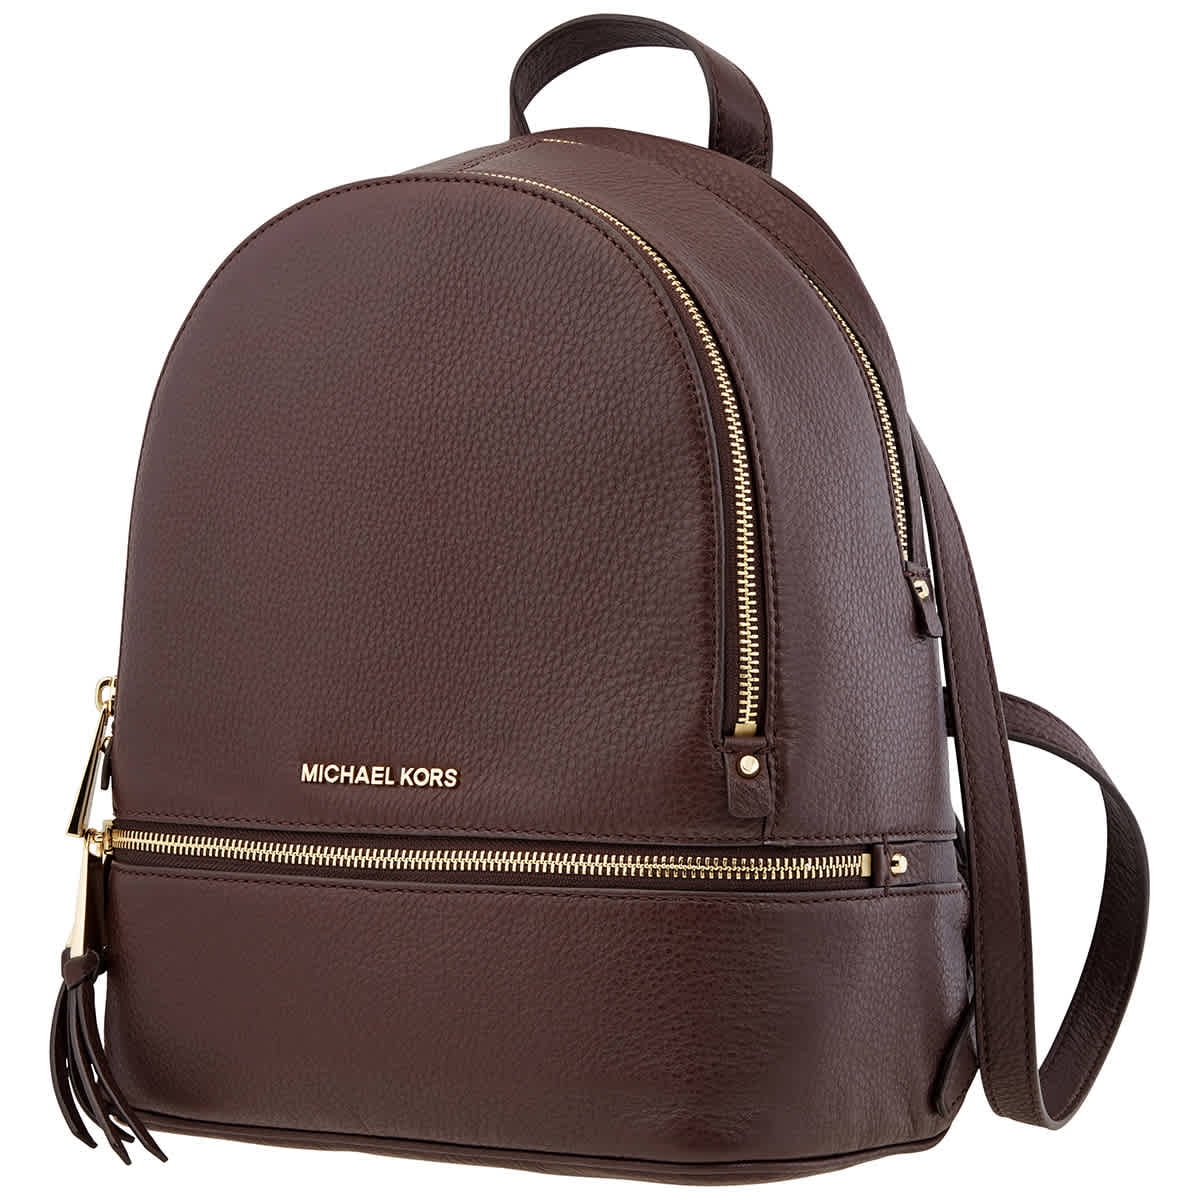 Michael Kors Rhea Small Leather Backpack - Barolo 